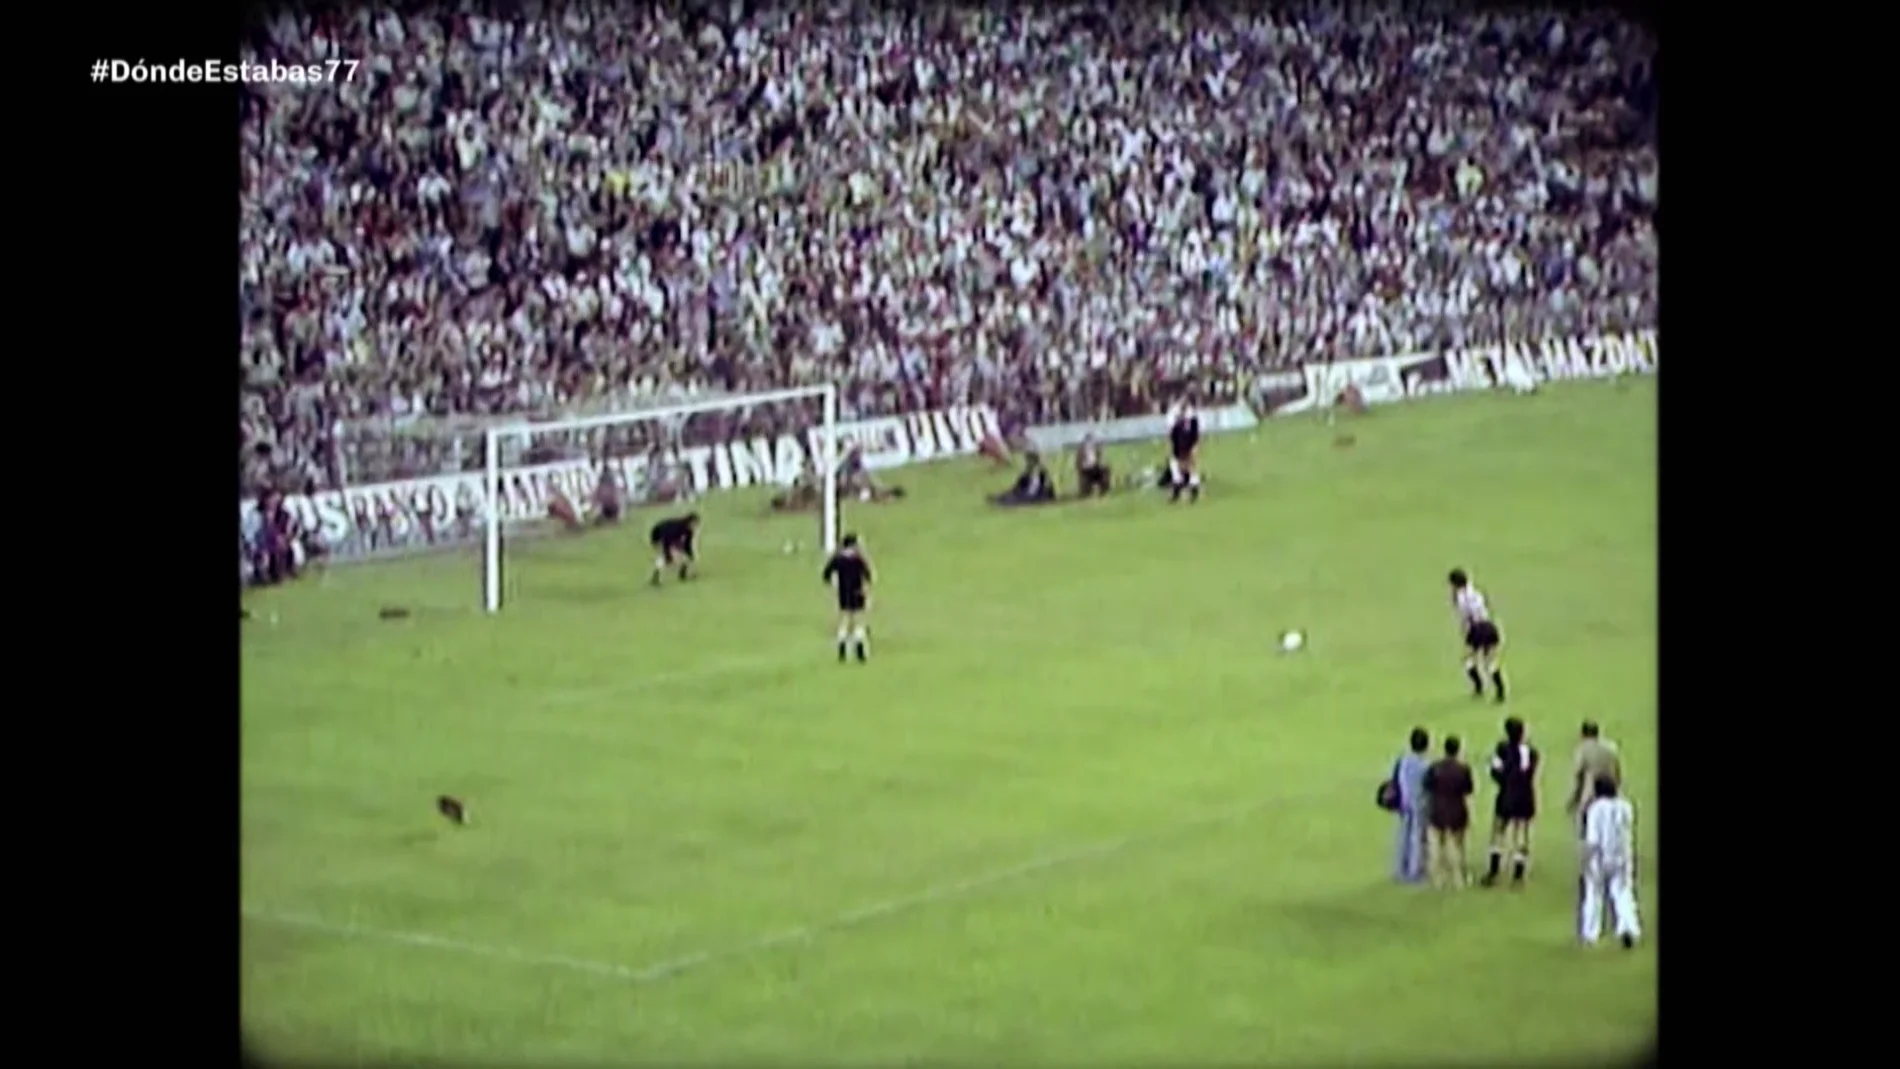 Copa del rey de 1977